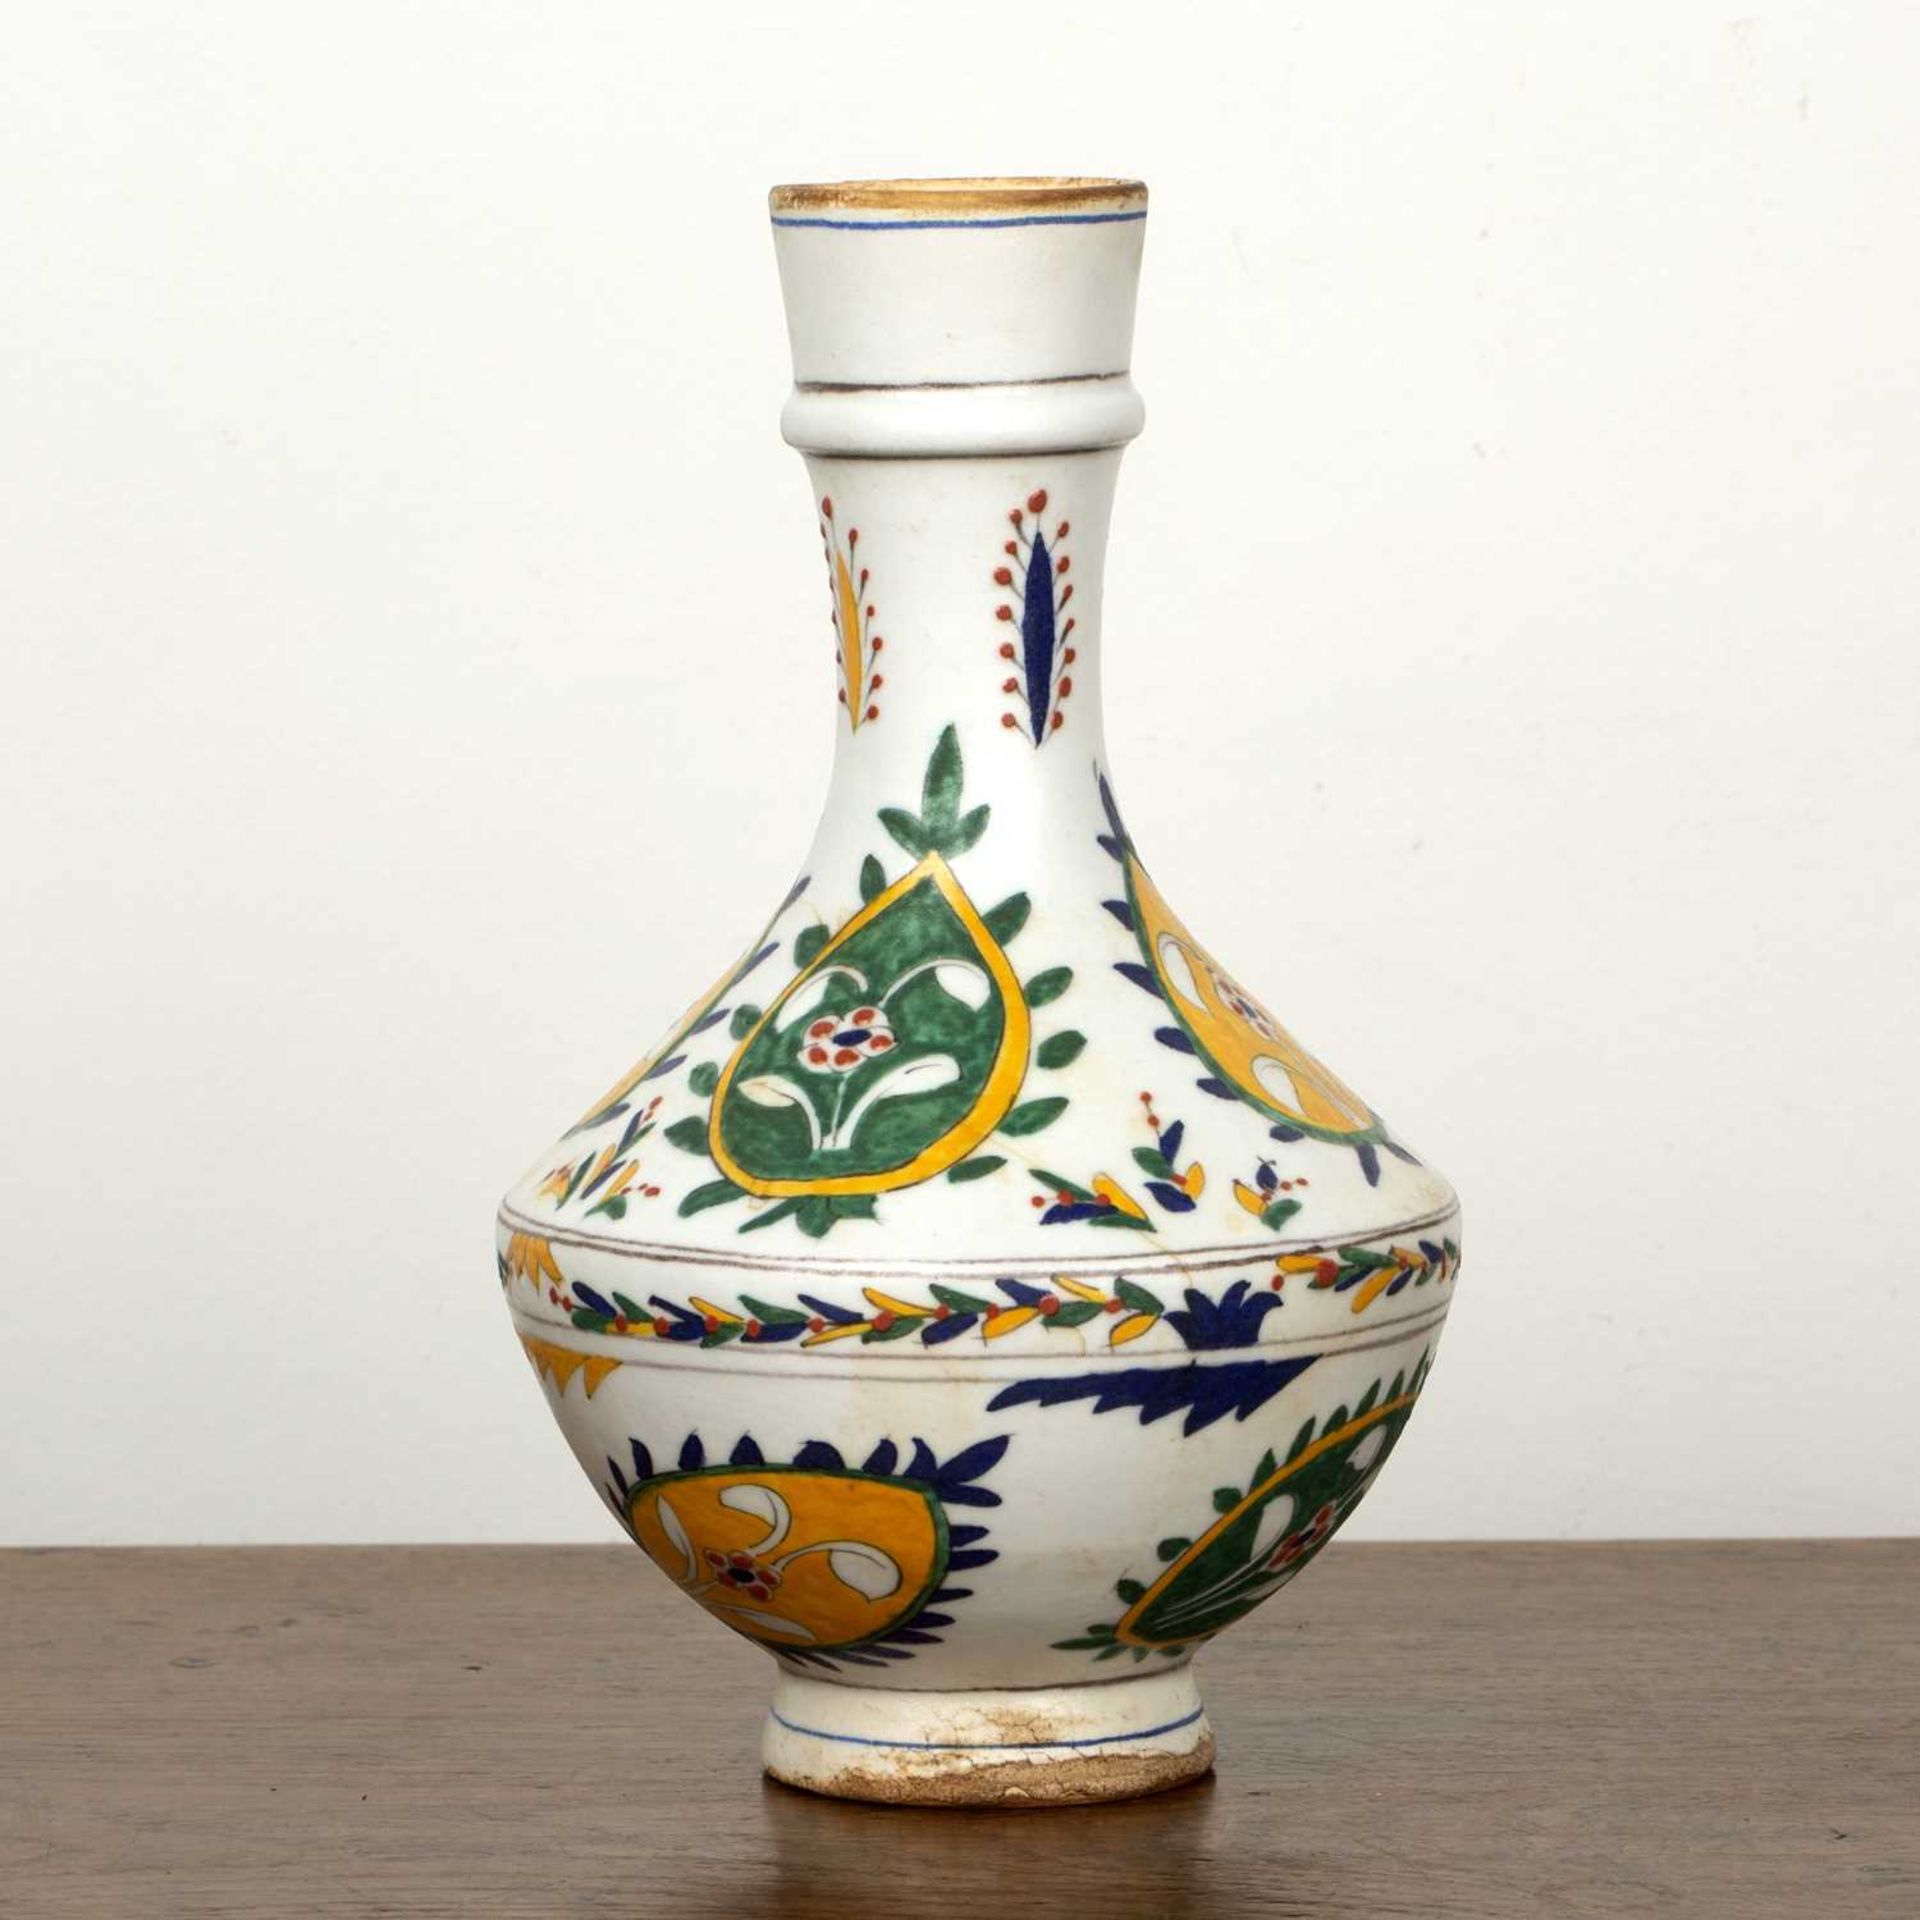 Kutahaya pottery vase Turkey, Turkey 18th/19th Century of white ground with painted leaf-shaped - Image 2 of 4